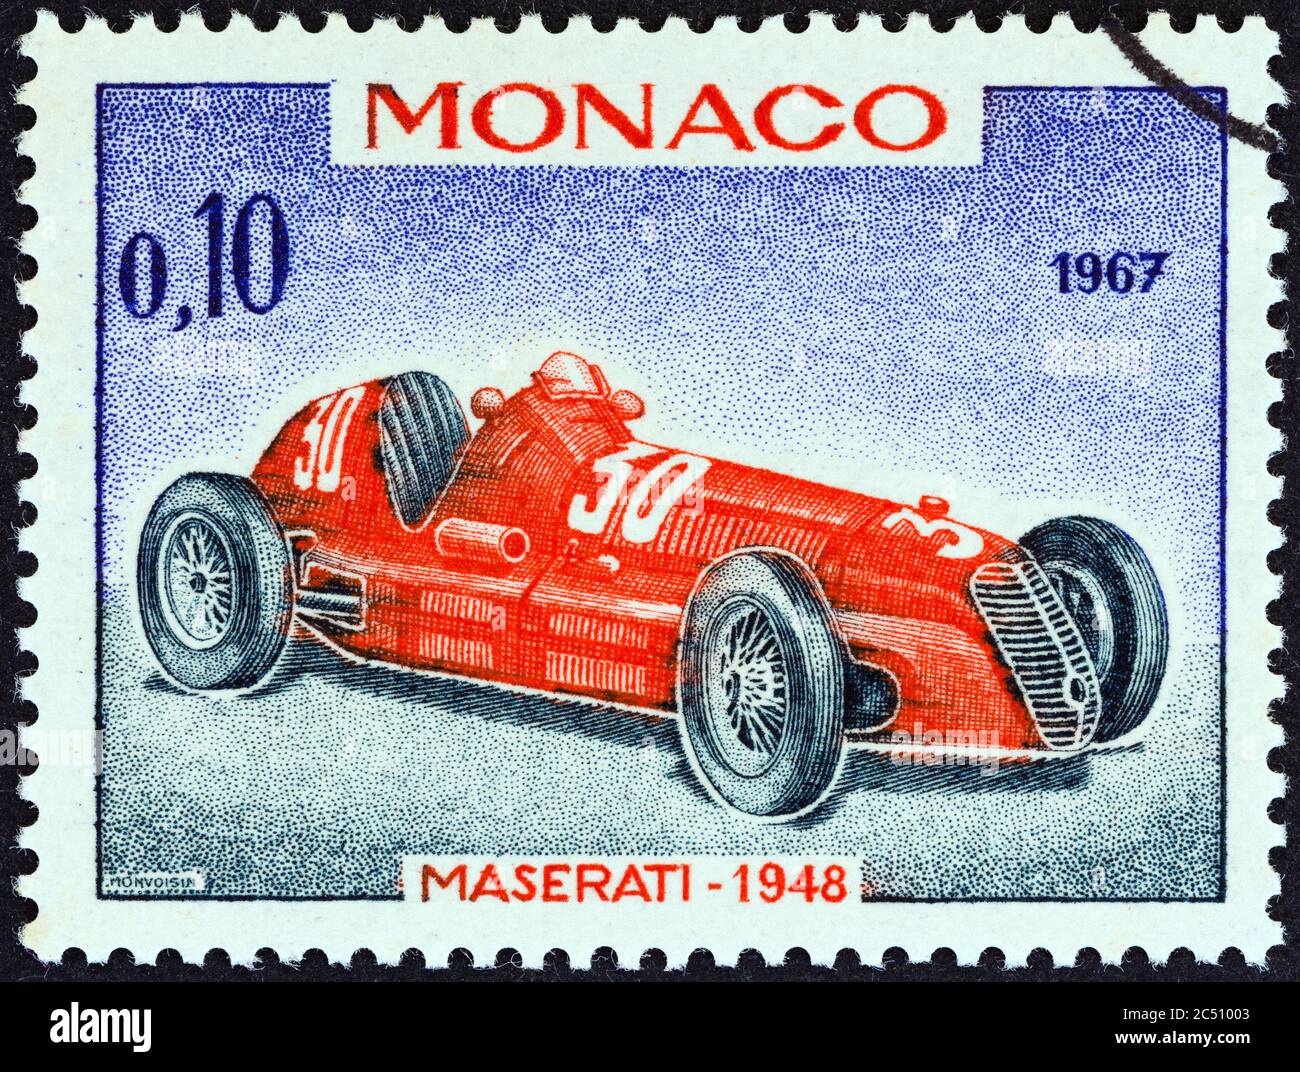 MONACO - VERS 1967 : un timbre imprimé à Monaco montre la voiture de course du Grand Prix de Maserati de 1948, vainqueur du Grand Prix de Monaco, vers 1967. Banque D'Images